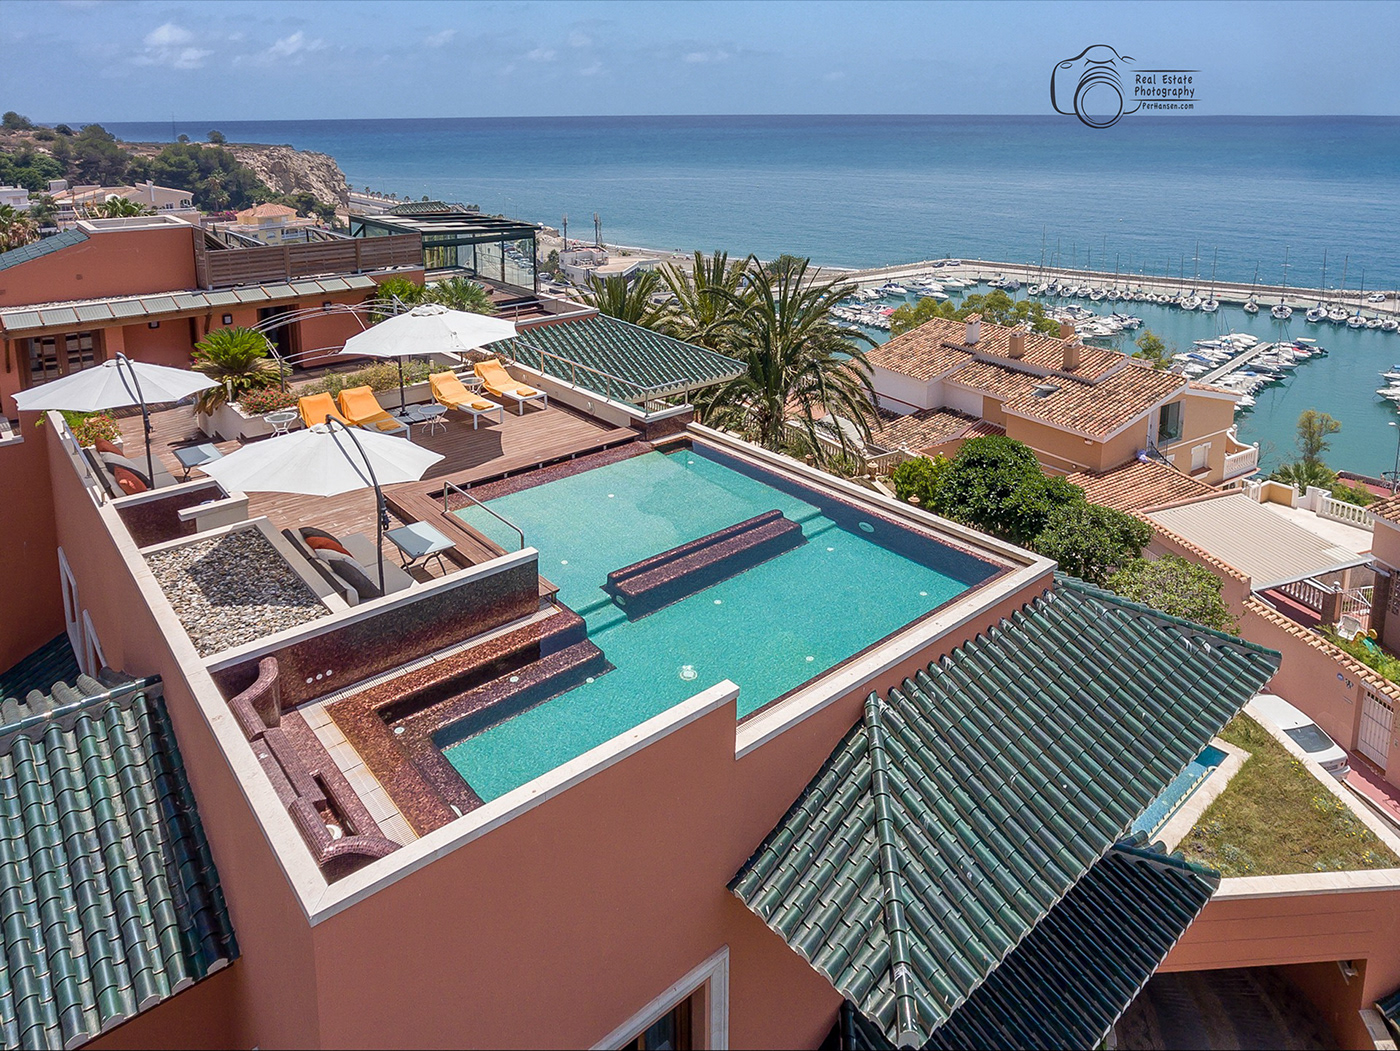 Benalmadena costa del sol Fuengirola malaga Marbella mijas real estate real estate photography spain TORREMOLINOS